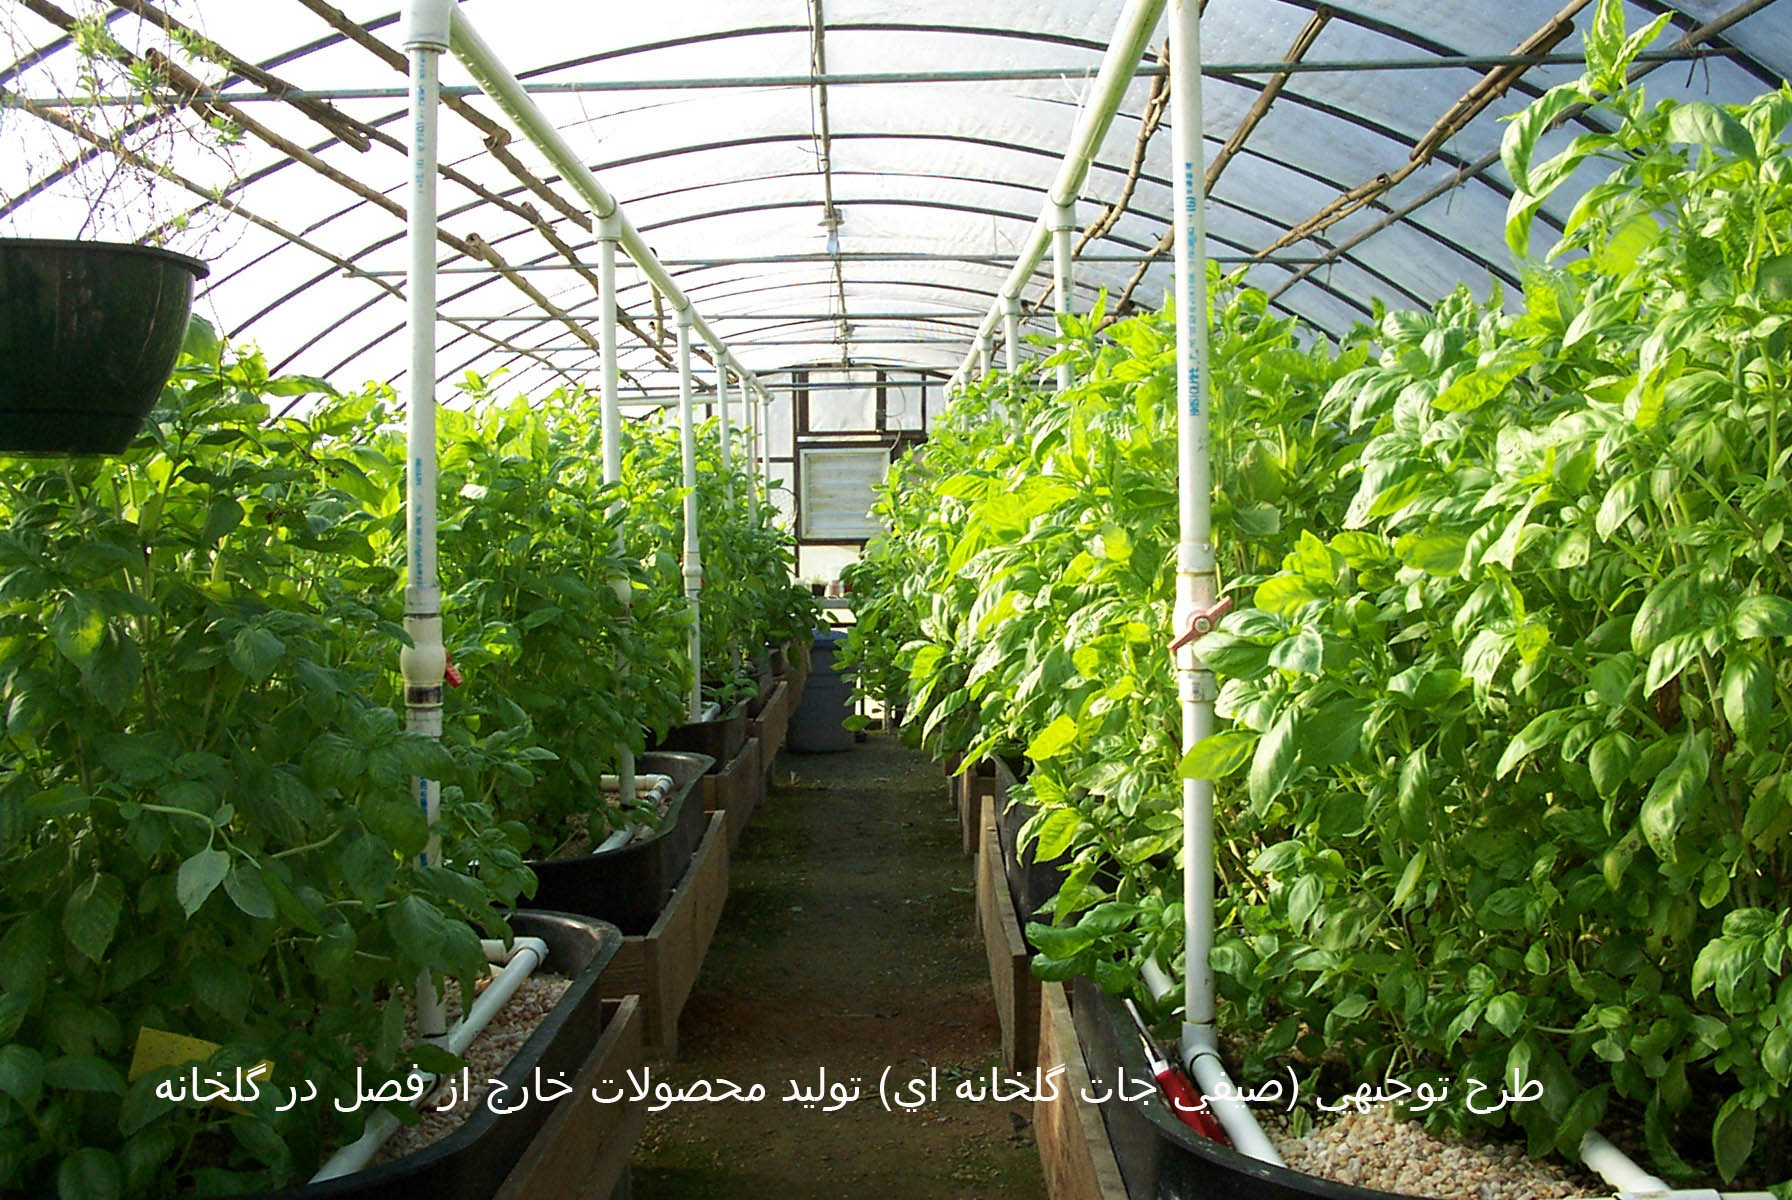 طرح توجيهي (صيفي جات گلخانه اي) توليد محصولات خارج از فصل در گلخانه